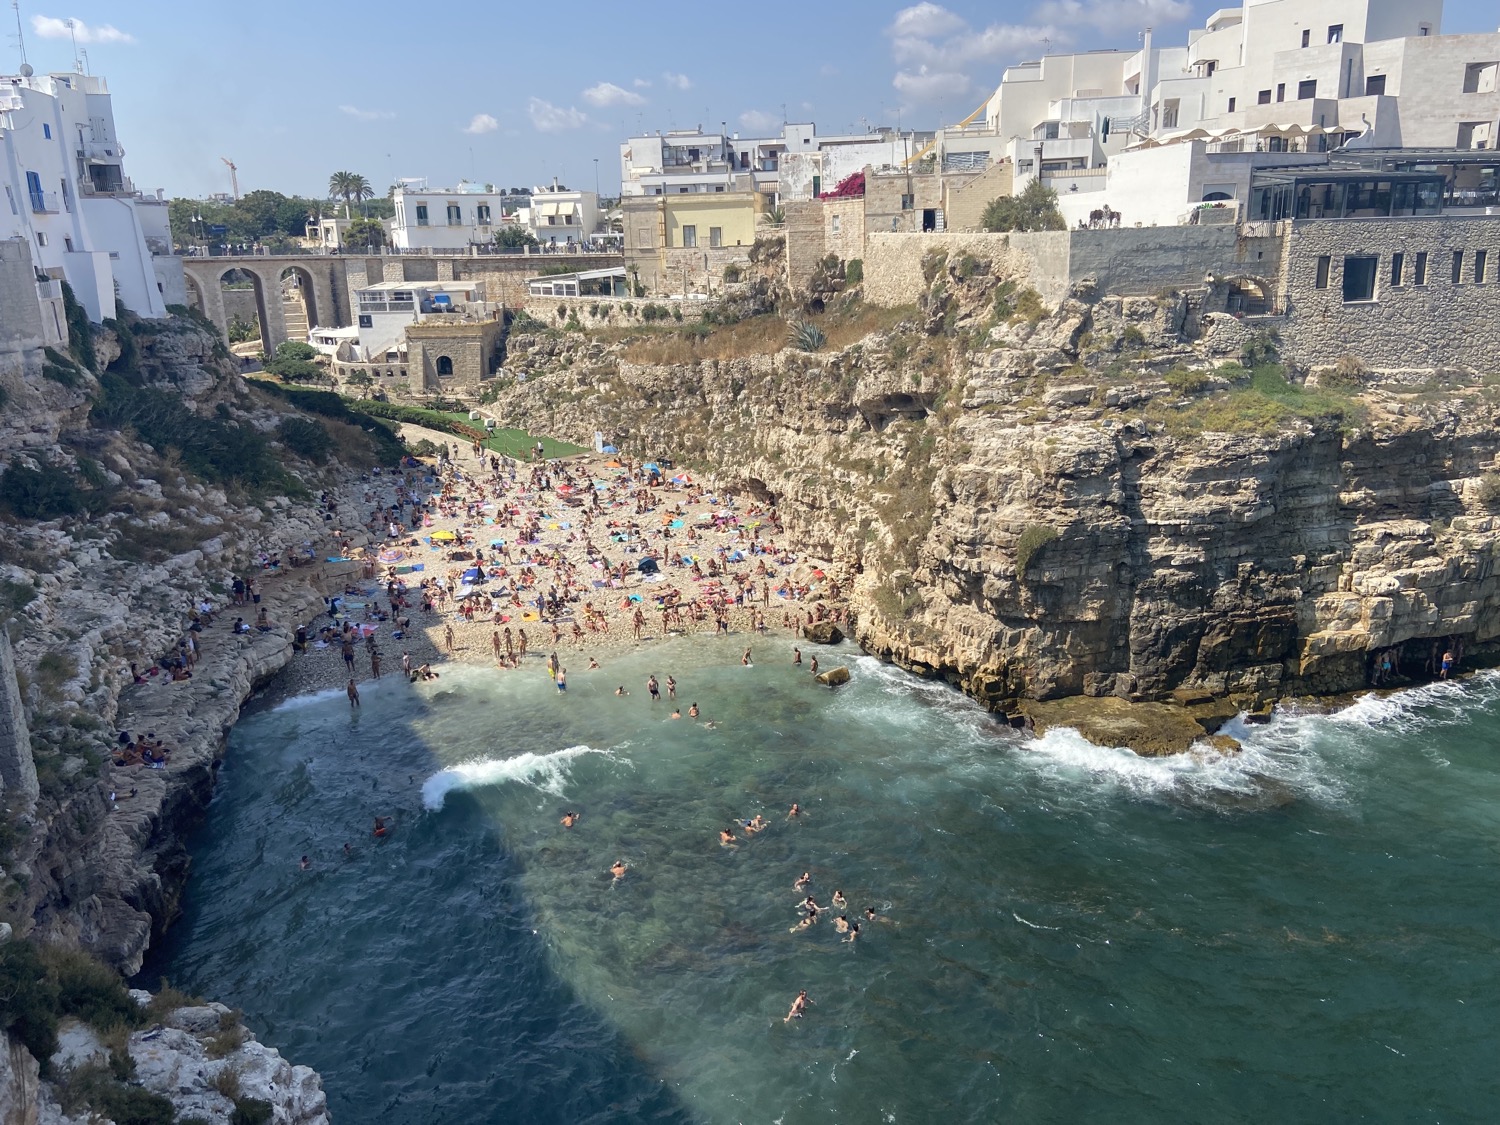 Roteiro Puglia: Praias e Cidades históricas no sul da Itália; O que fazer pela região?